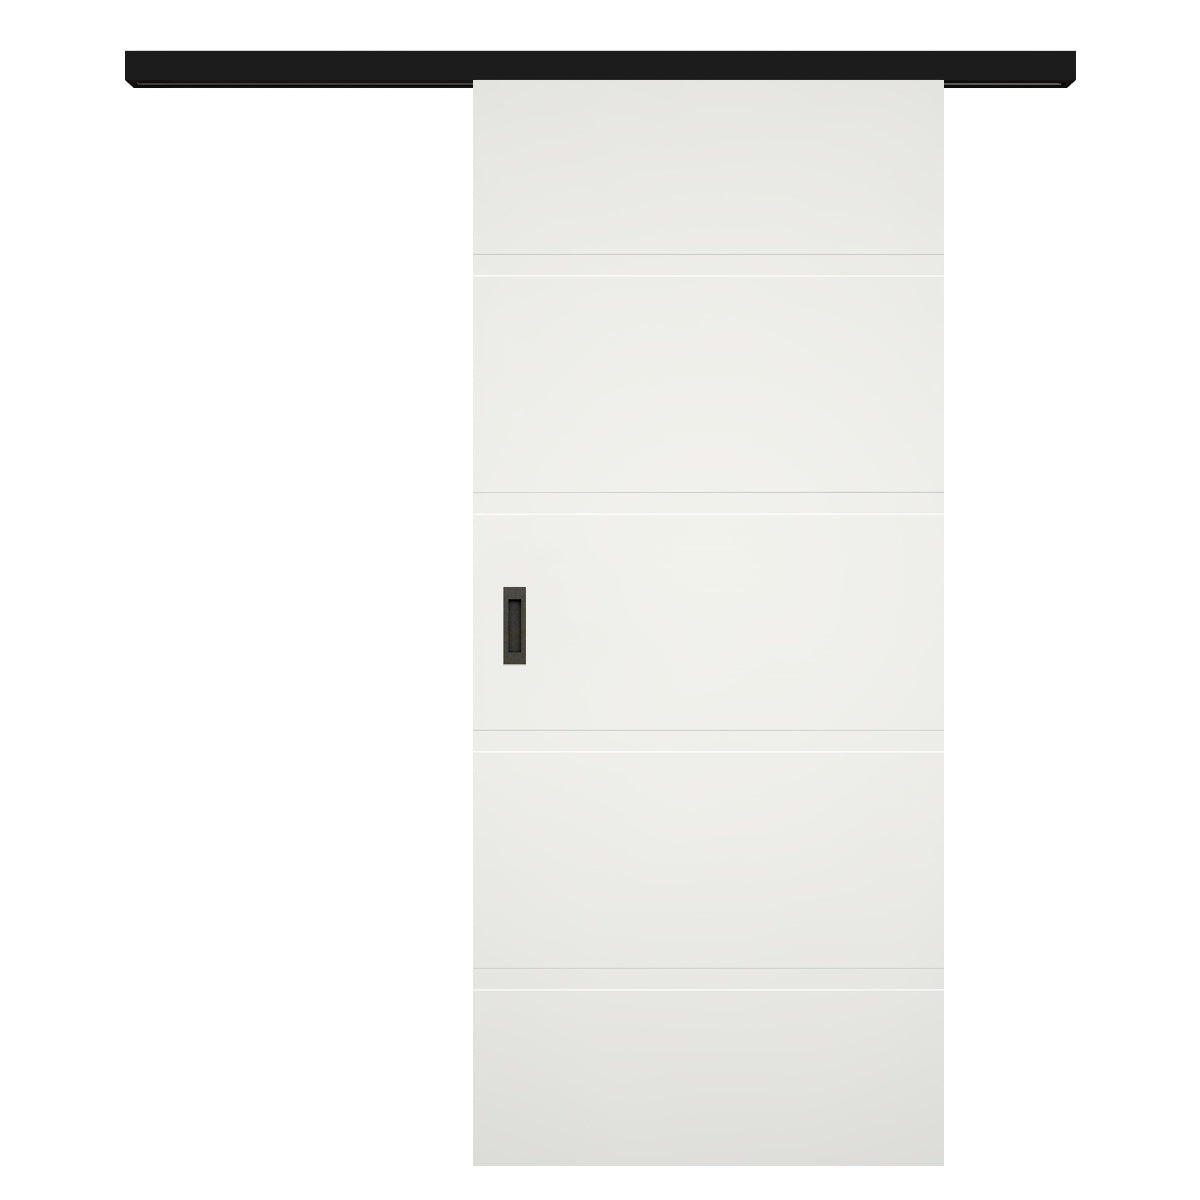 Schiebetür für Set mit schwarzem Laufkasten soft-weiß 4 breite Rillen - Modell Designtür QB41